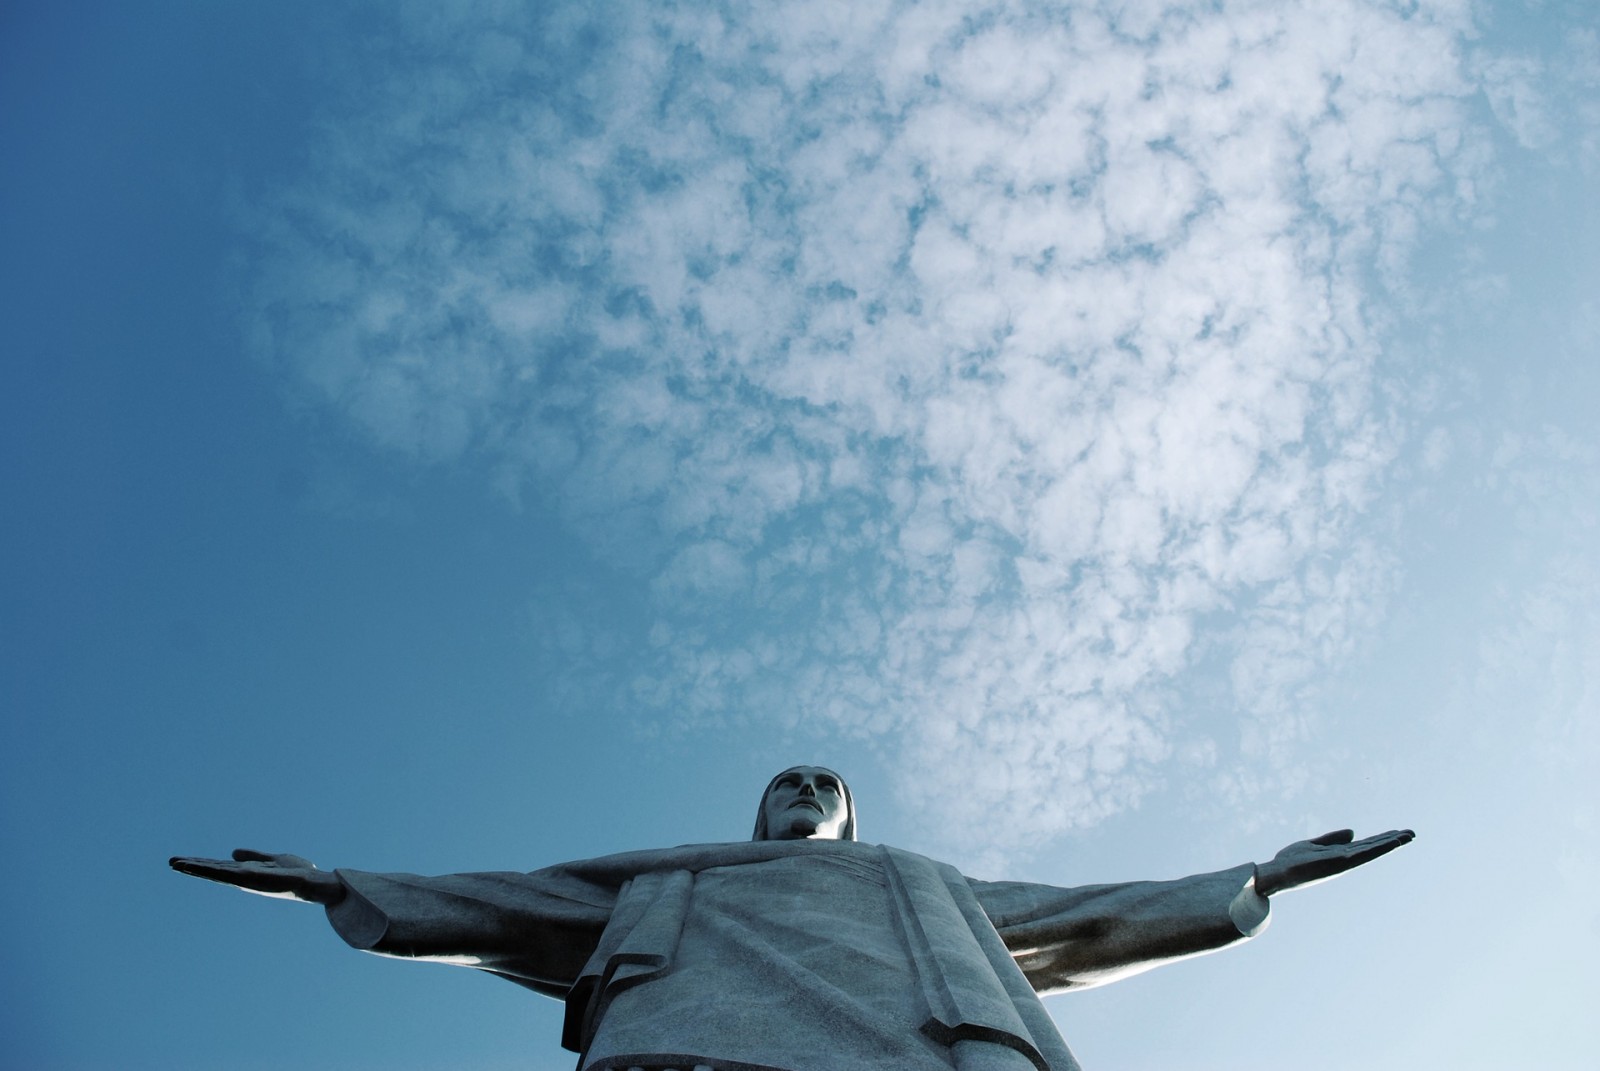 Rio Christ Statue, Rio De Janeiro, Brazil, Pixabay.com